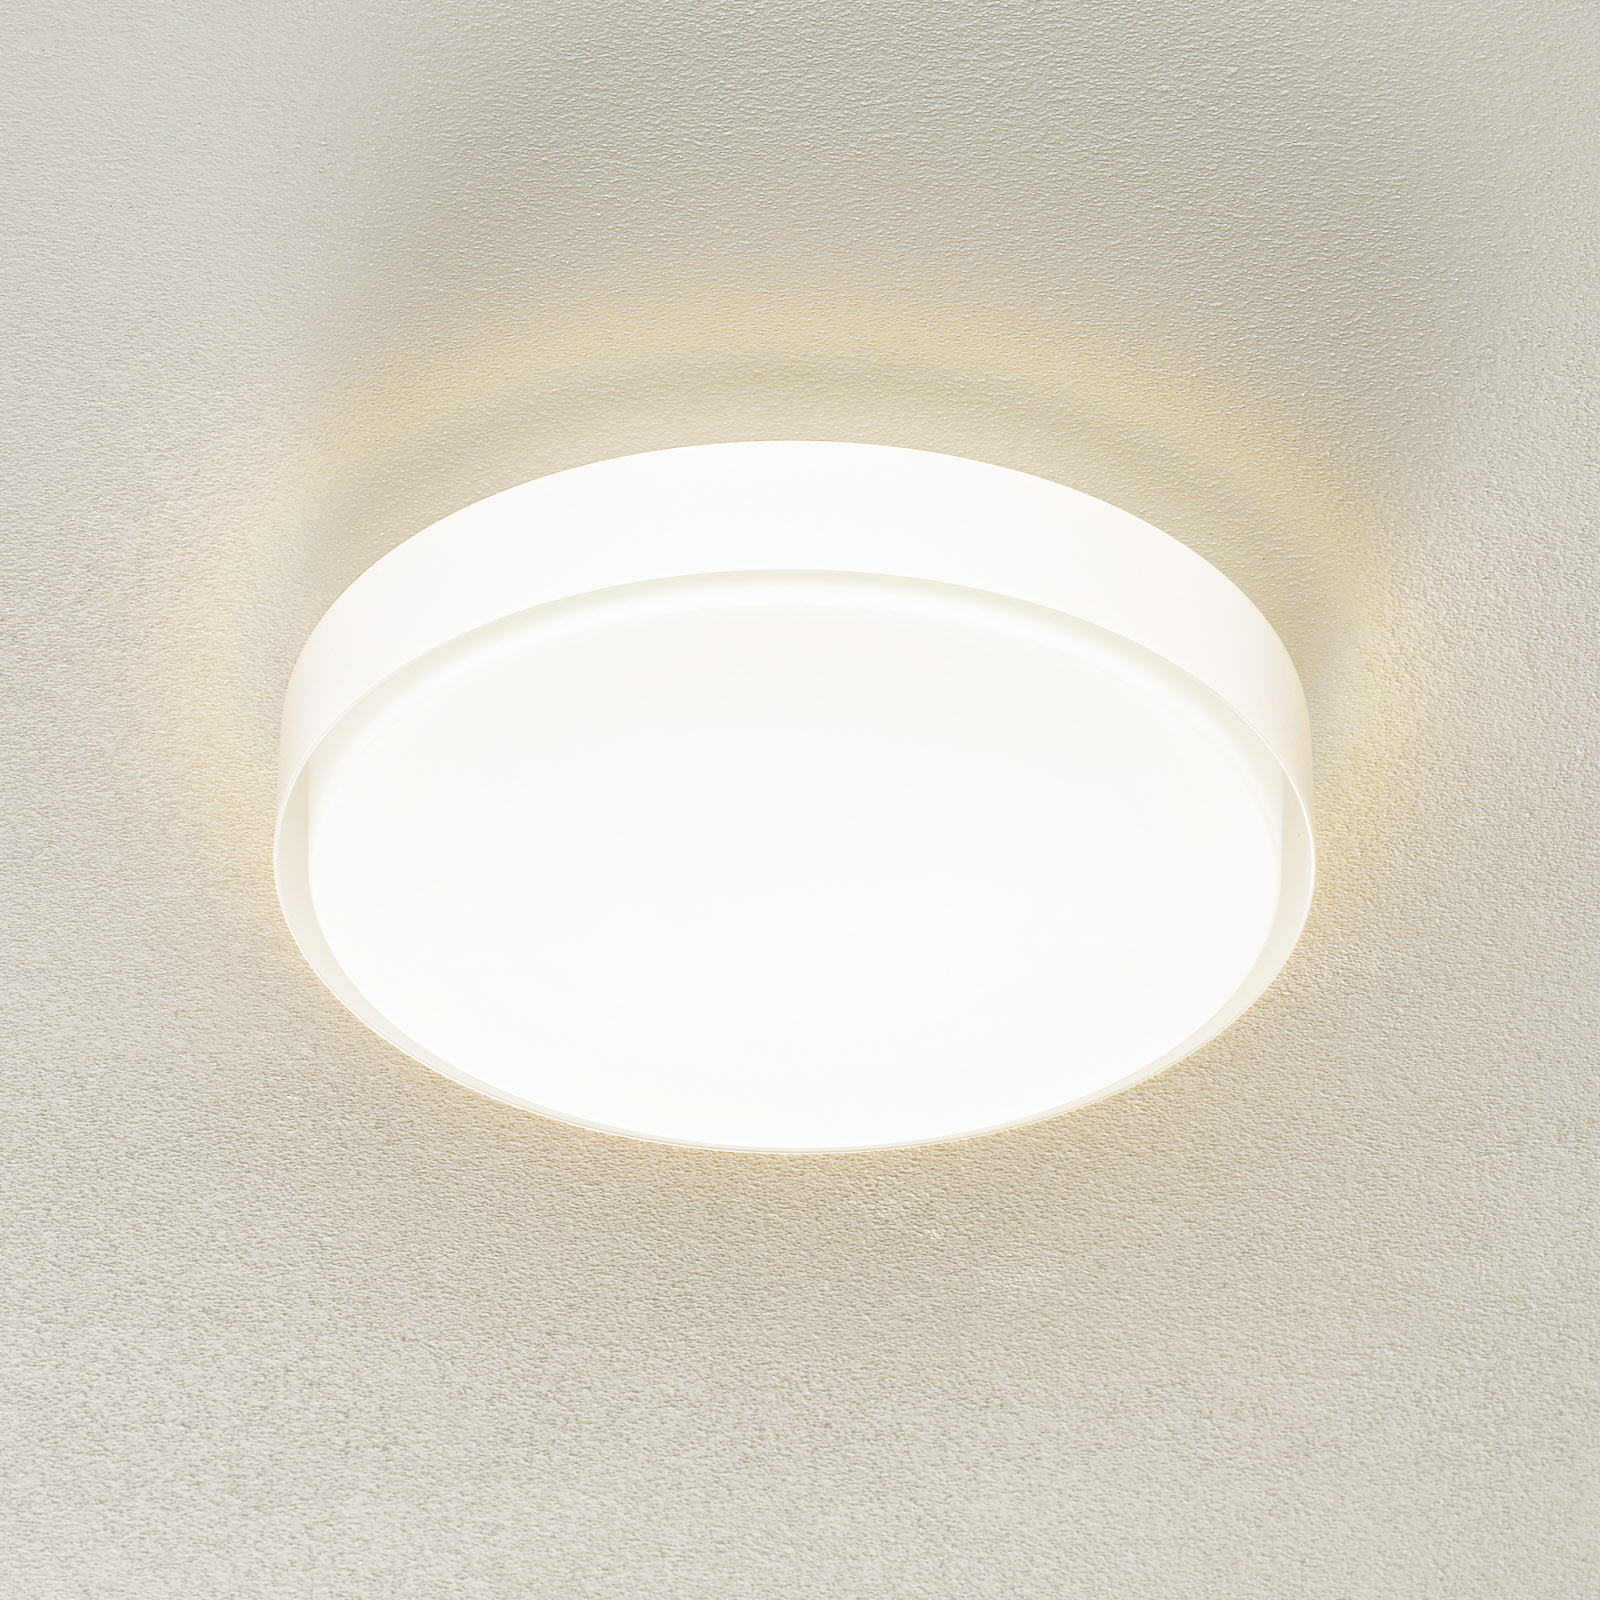 BEGA 34278 LED-Deckenleuchte, weiß, Ø 36 cm, DALI